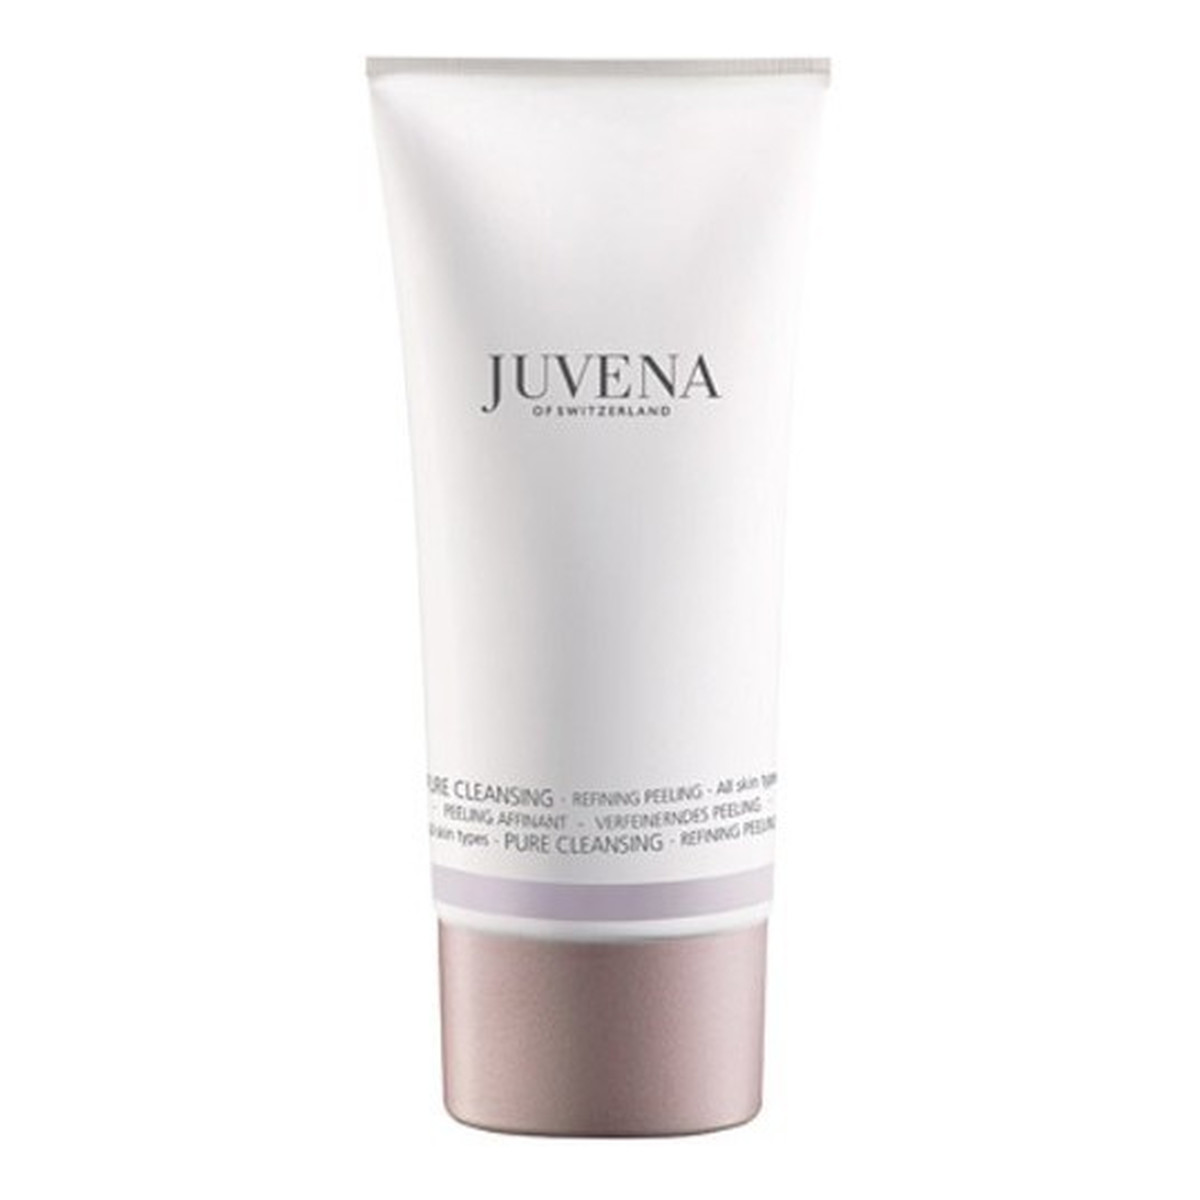 Juvena Pure Cleansing Refining Peeling do każdego rodzaju skóry 100ml